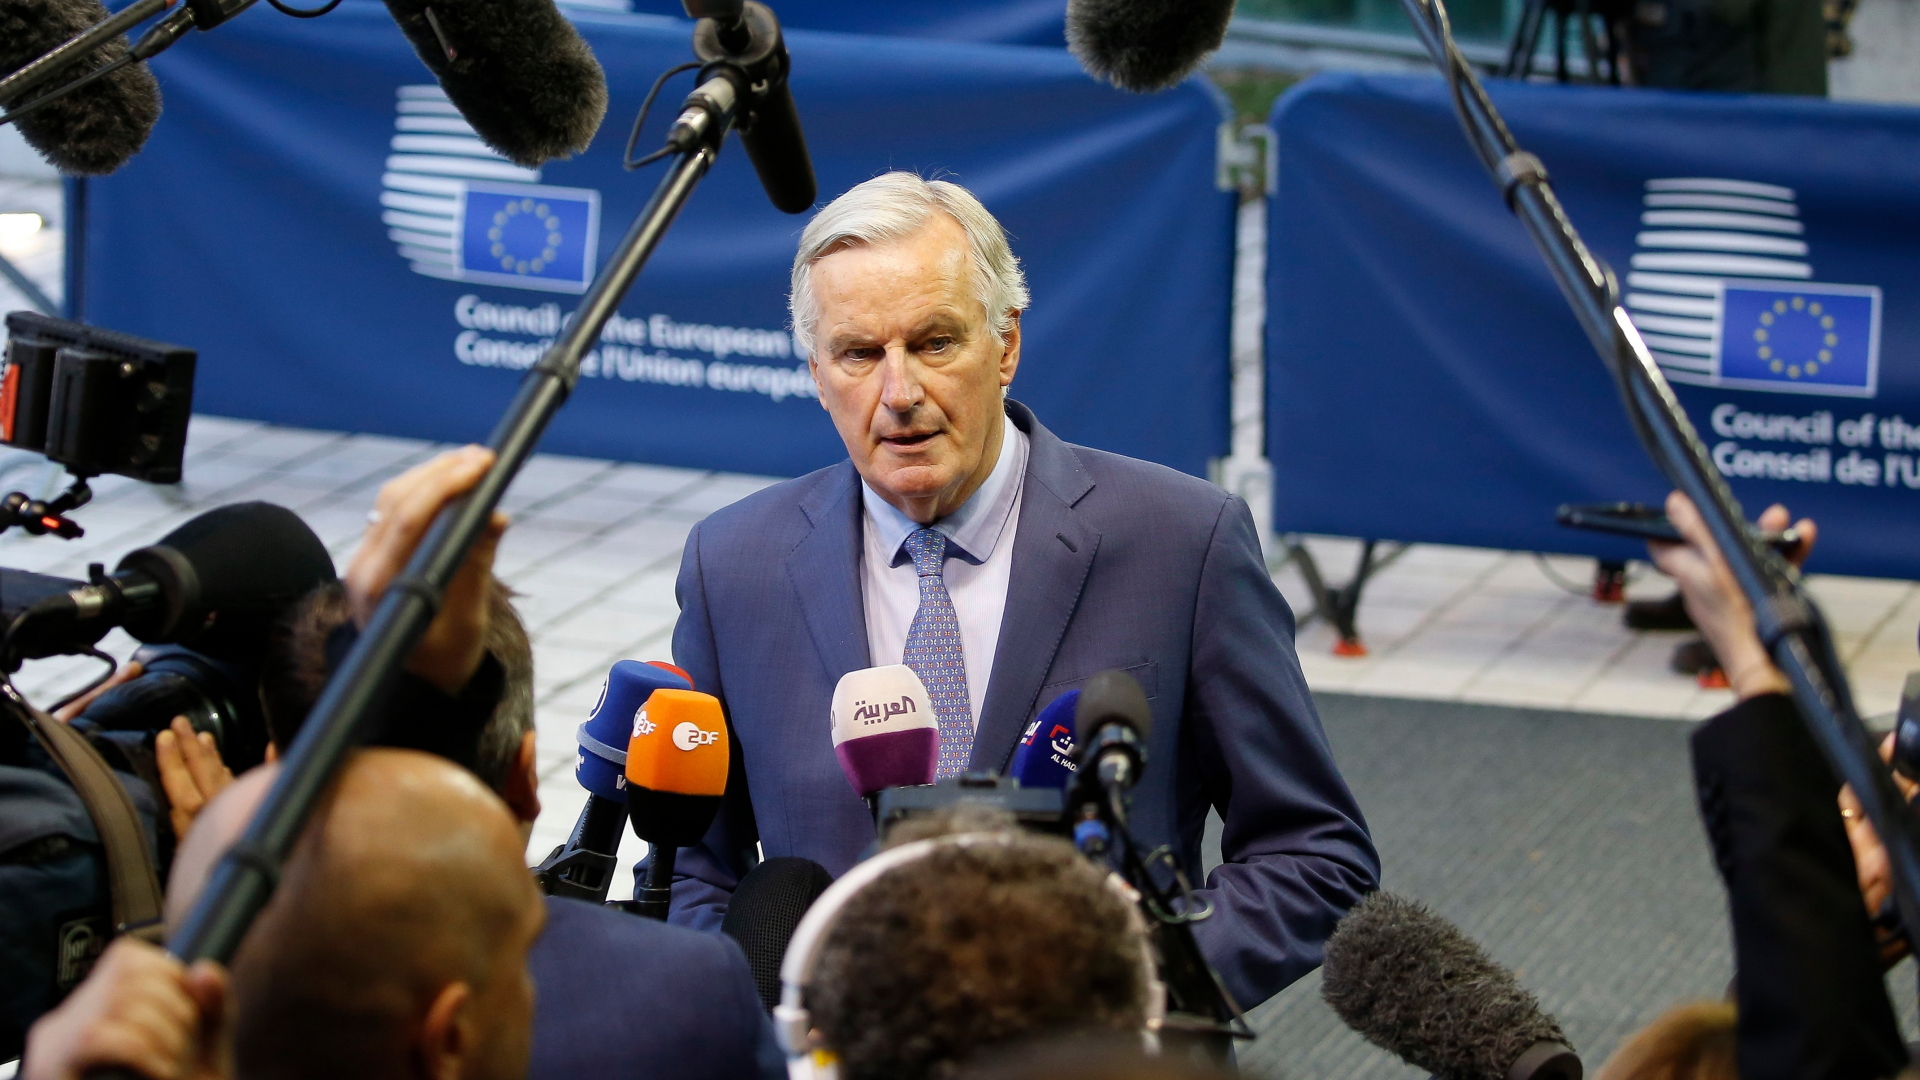 Der Chefunterhändler der EU für den Brexit, Michel Barnier, trifft zu einem Treffen in Luxemburg ein. | JULIEN WARNAND/EPA-EFE/REX